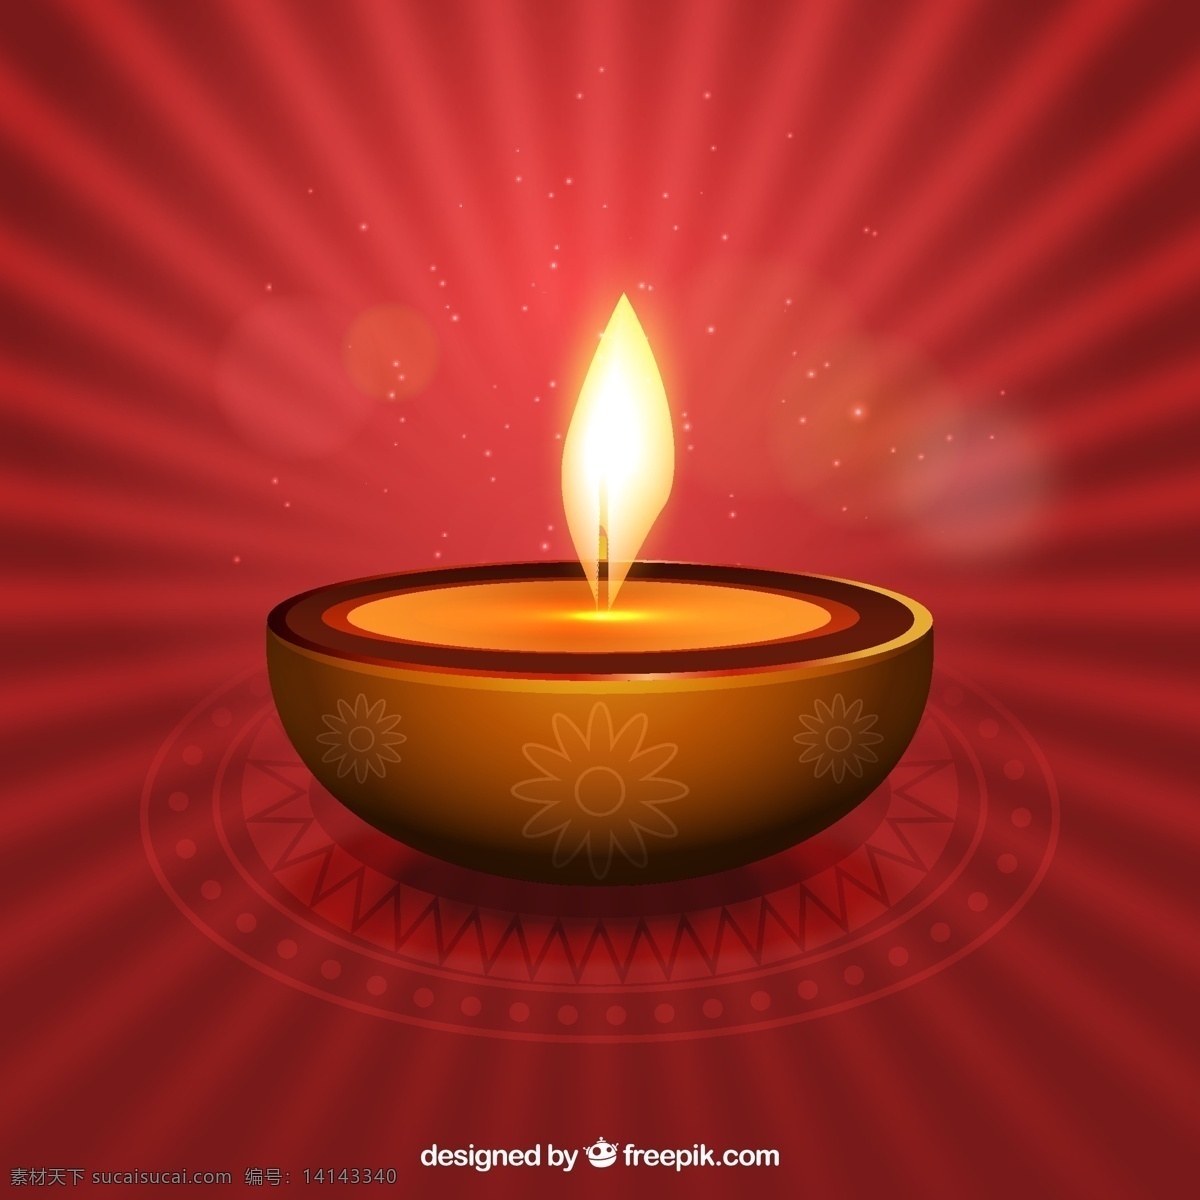 排灯节蜡烛 背景光 排灯节 快乐 灯 印度 庆典 宗教节日 假日 火焰 蜡烛 装饰 节日快乐 文化 传统 宗教 印度教 红色